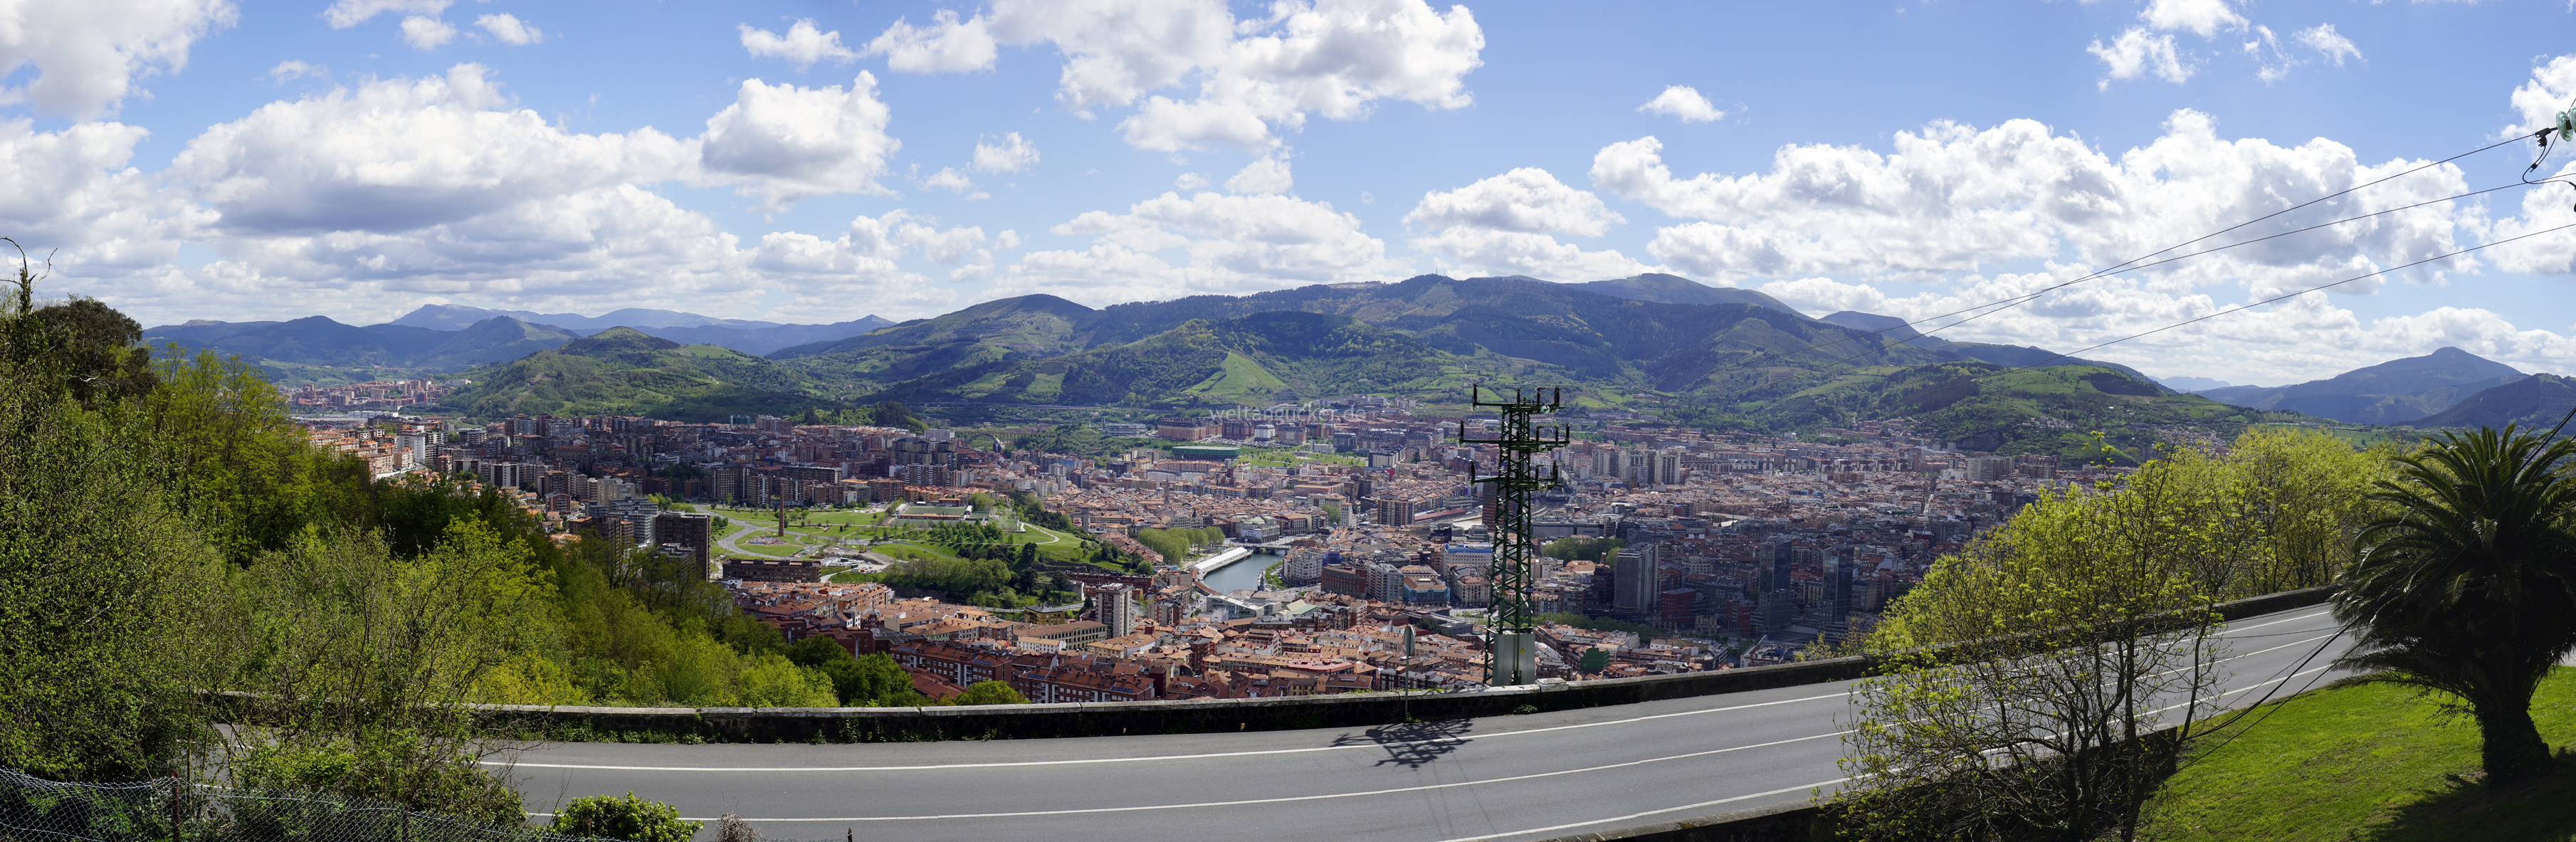 Blick über Bilbao von der Bergstation des Funicular de Artxanda (Bilbao, Baskenland, Spanien)